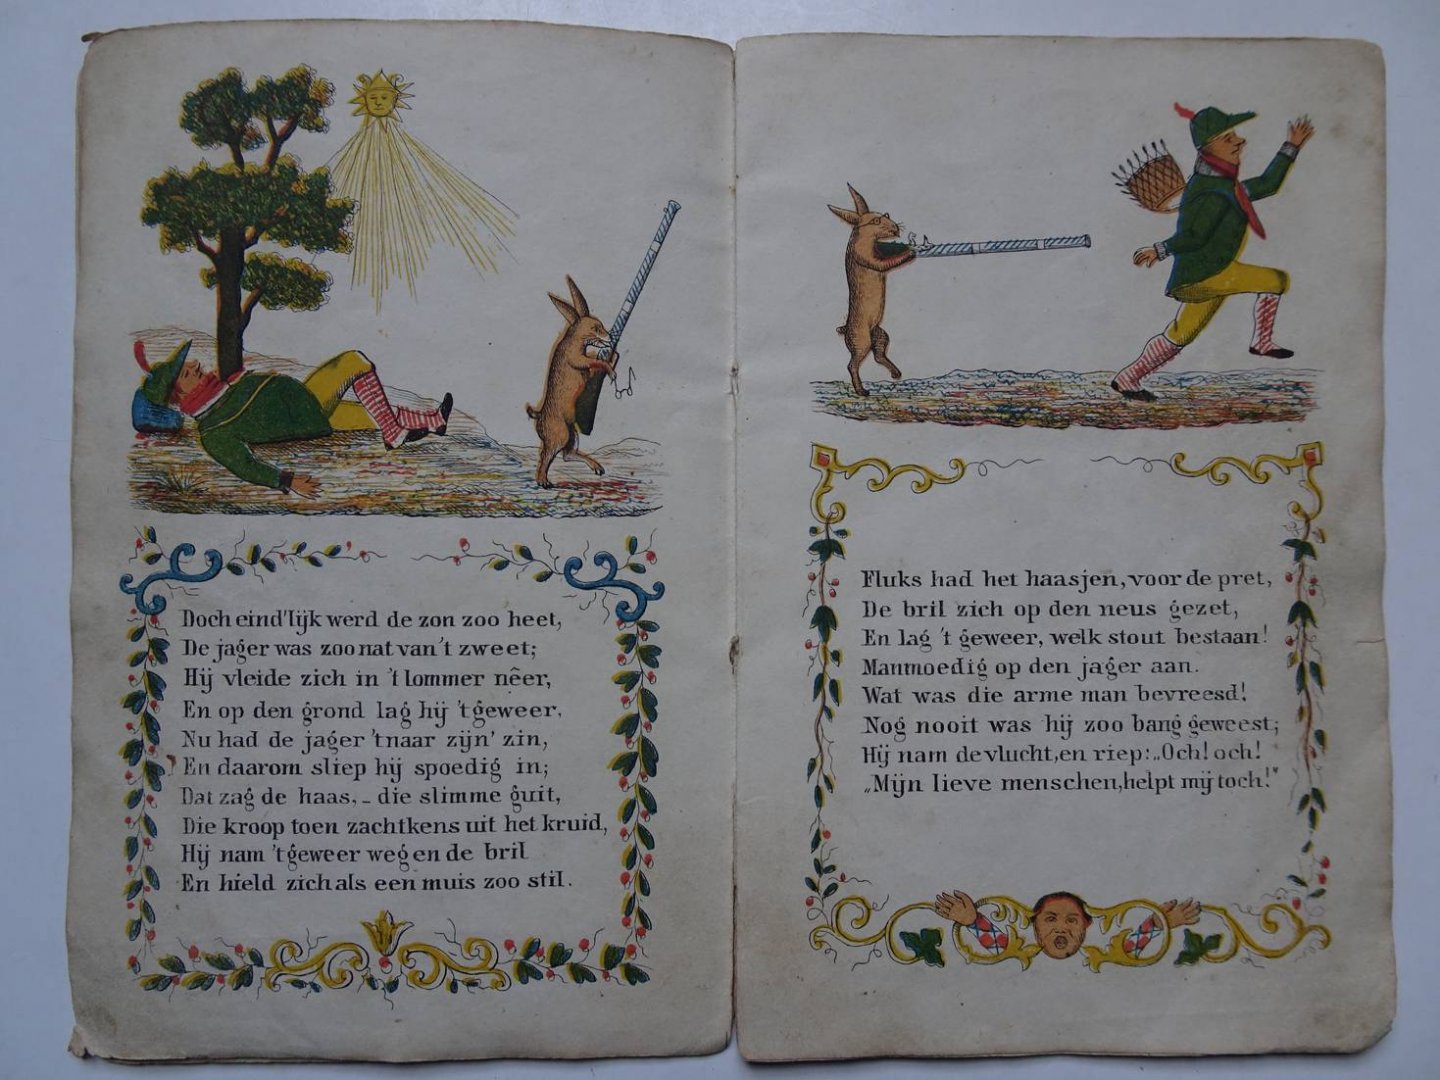 N.n.. - De Wilde Jager. Een Aardig Prentenboekje met Leerzame Vertellingen voor Kinderen van 3-6 Jaren.